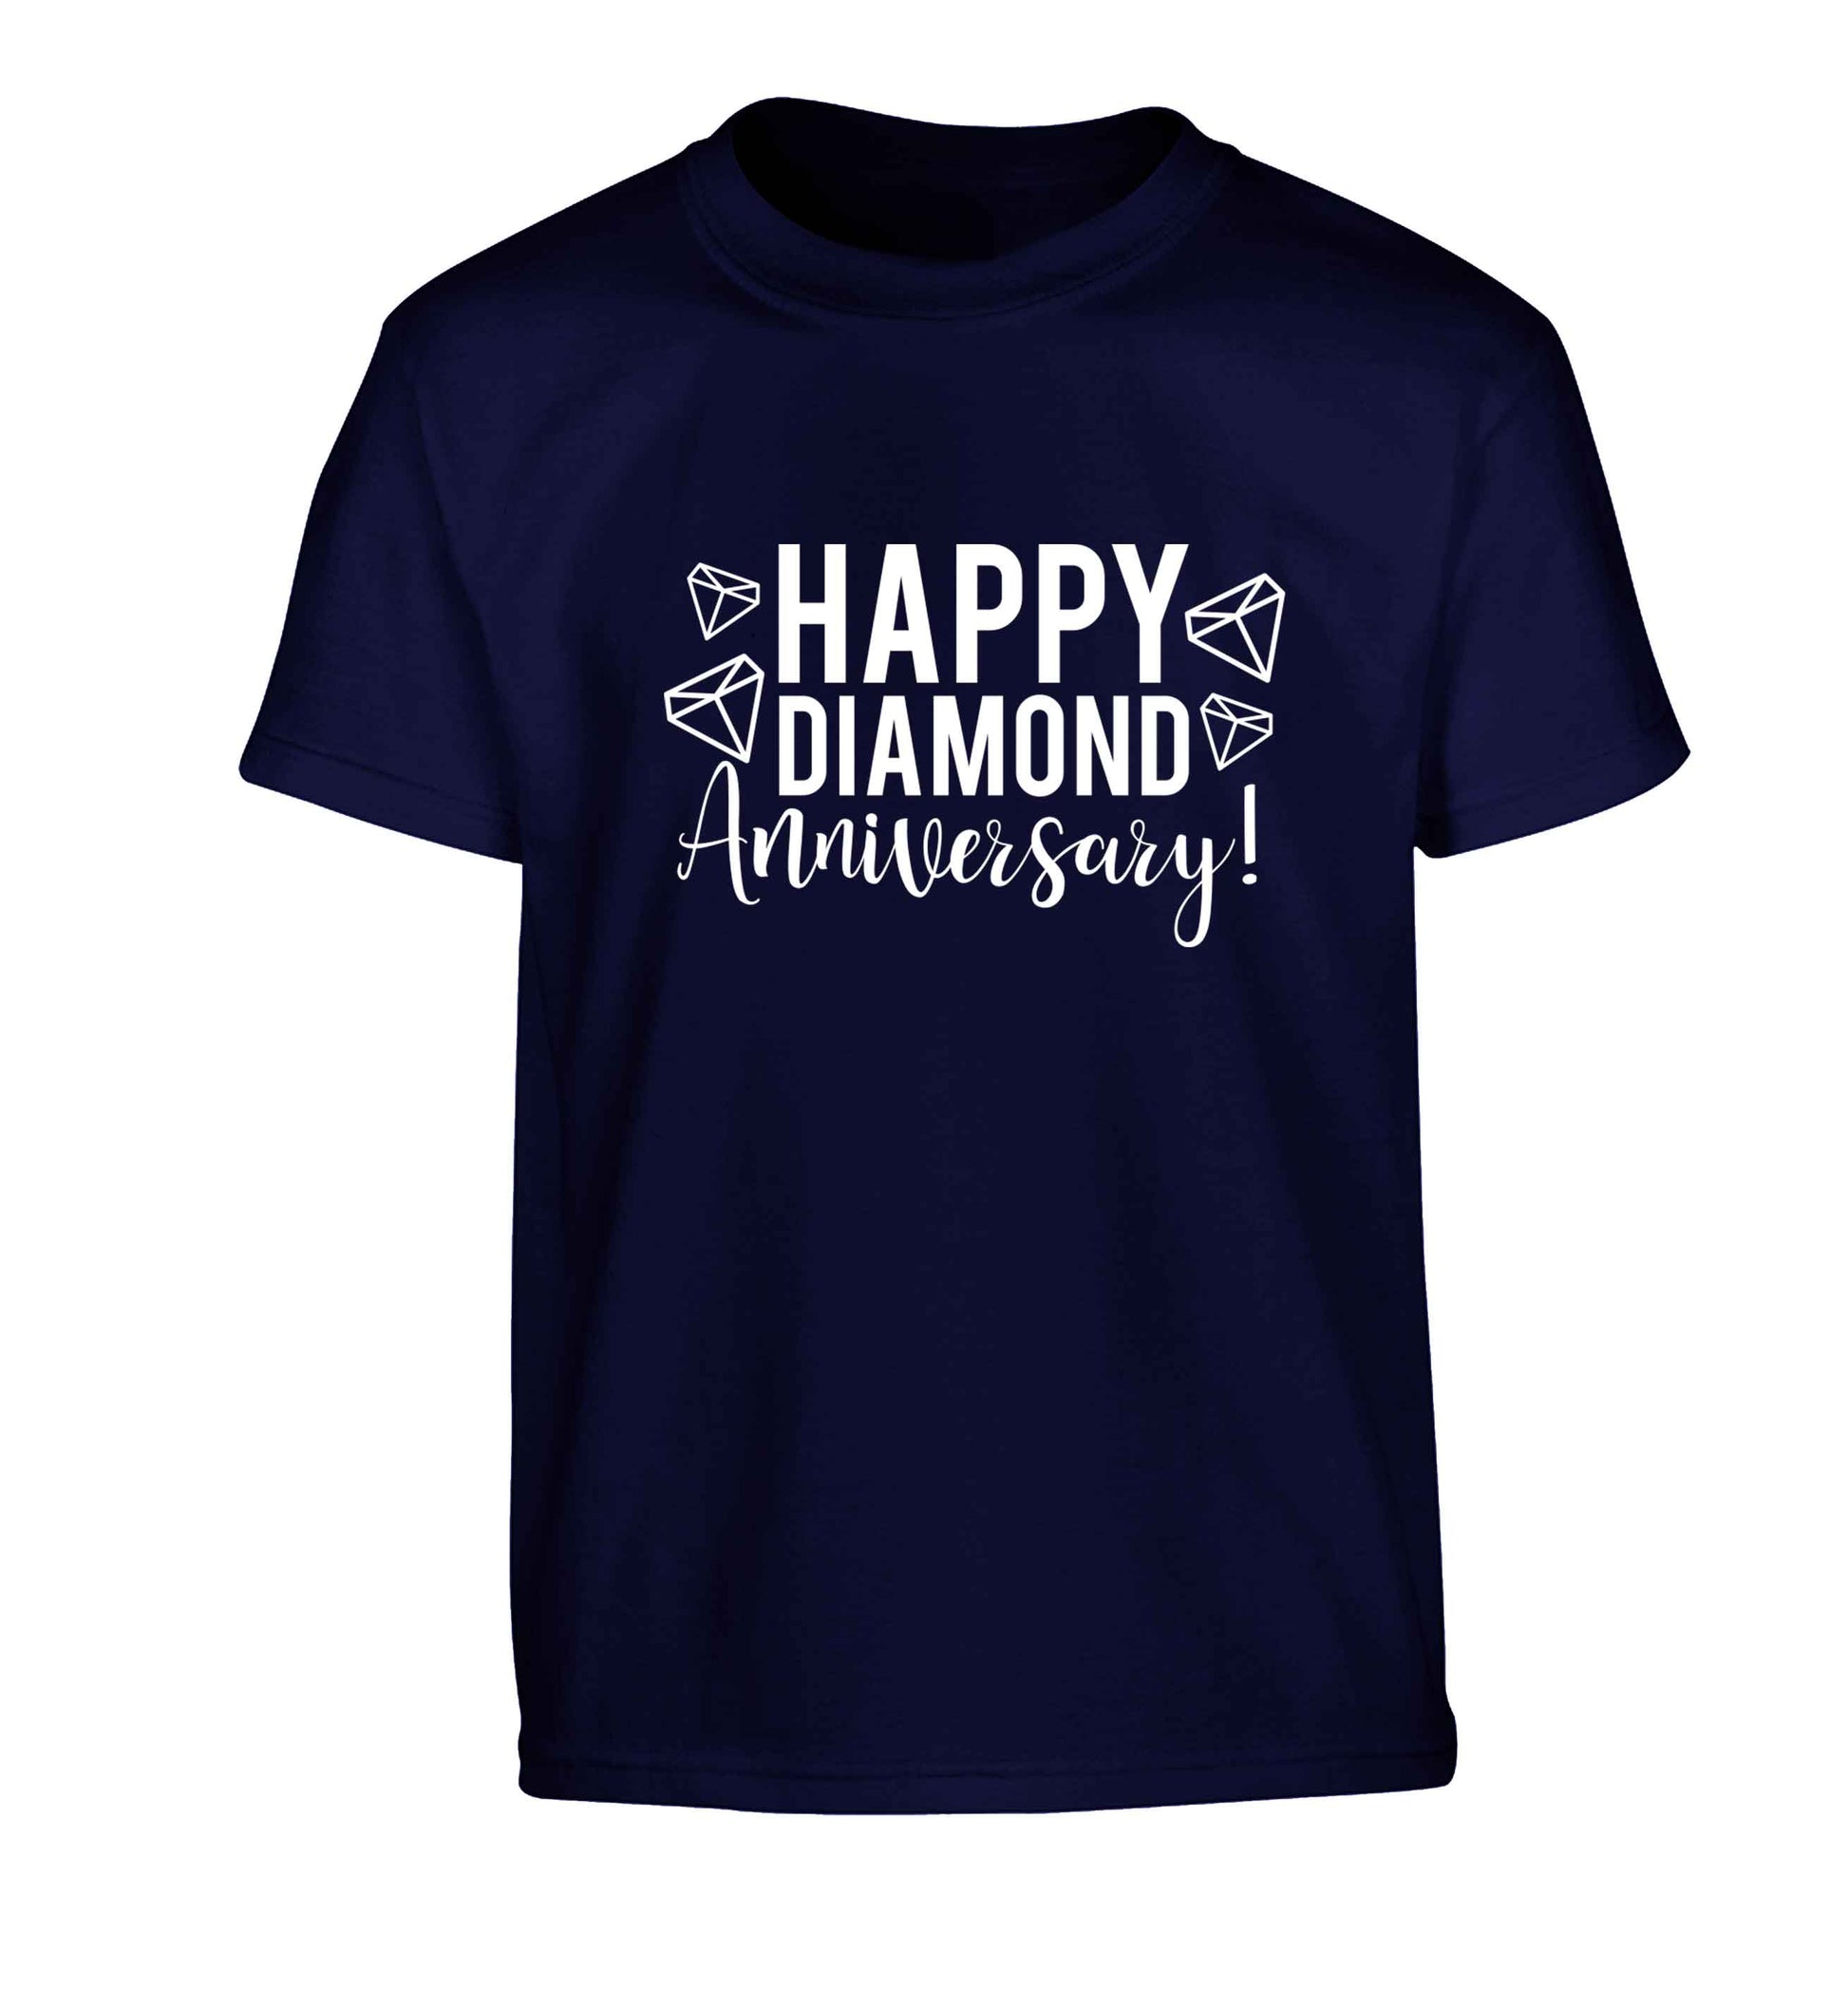 Happy diamond anniversary! Children's navy Tshirt 12-13 Years